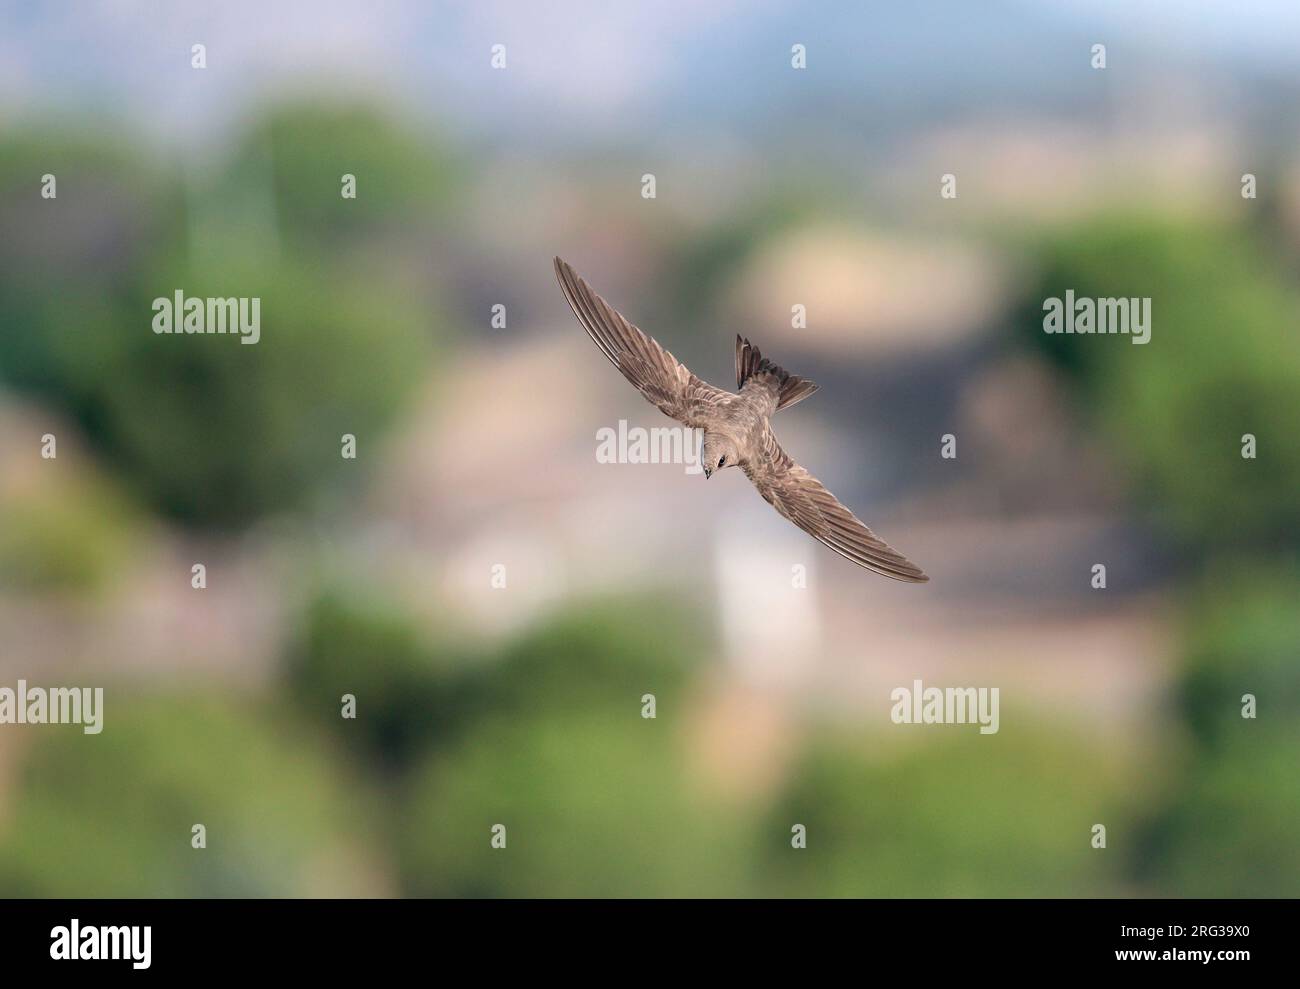 Alpine Swift (Apus melba) in flight in Spain. Stock Photo